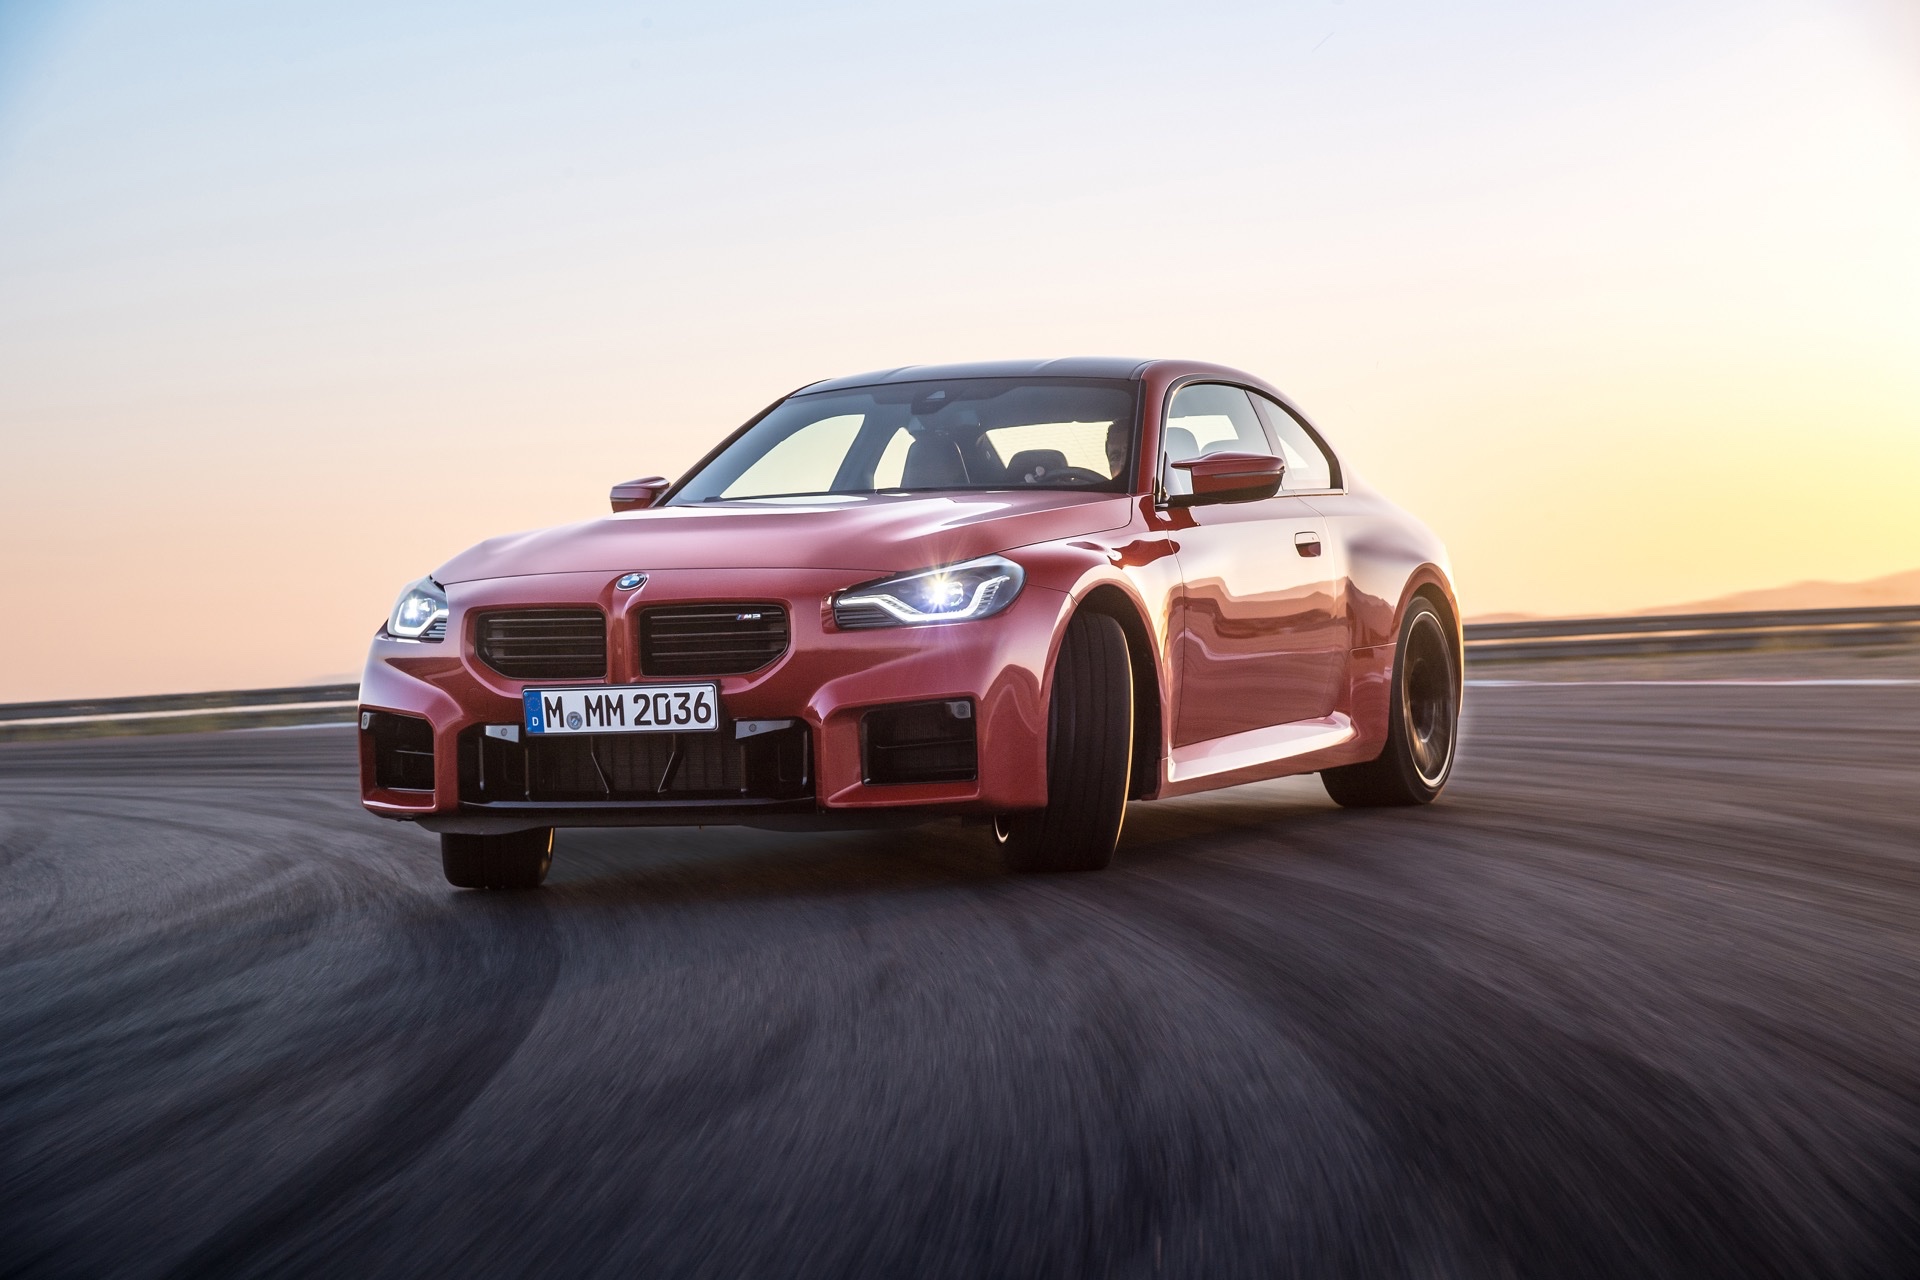 BMW M2 đời mới: Xe thể thao giá mềm cho người nhập môn - Ảnh 1.